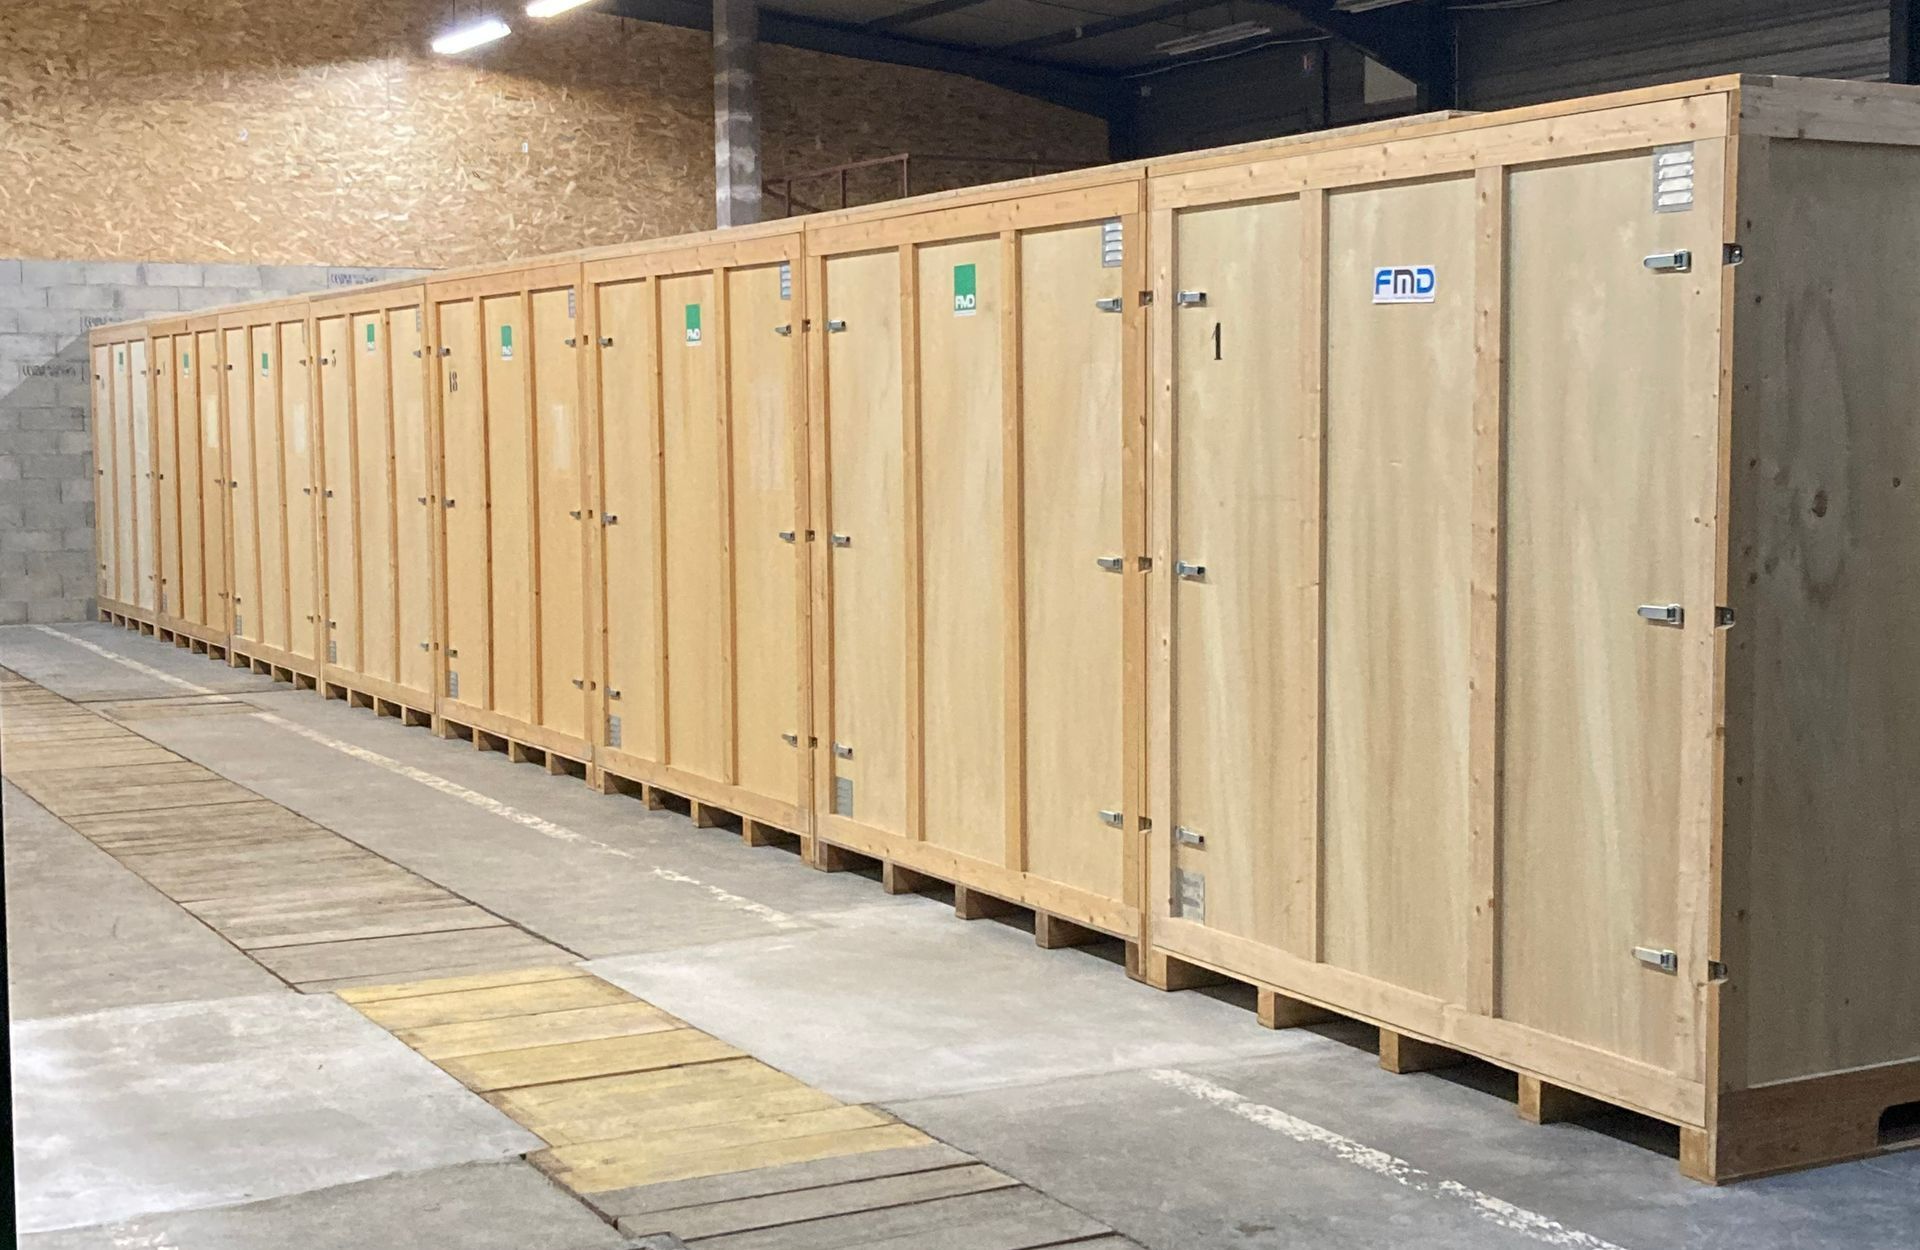 Un entrepôt de stockage avec des containers en bois